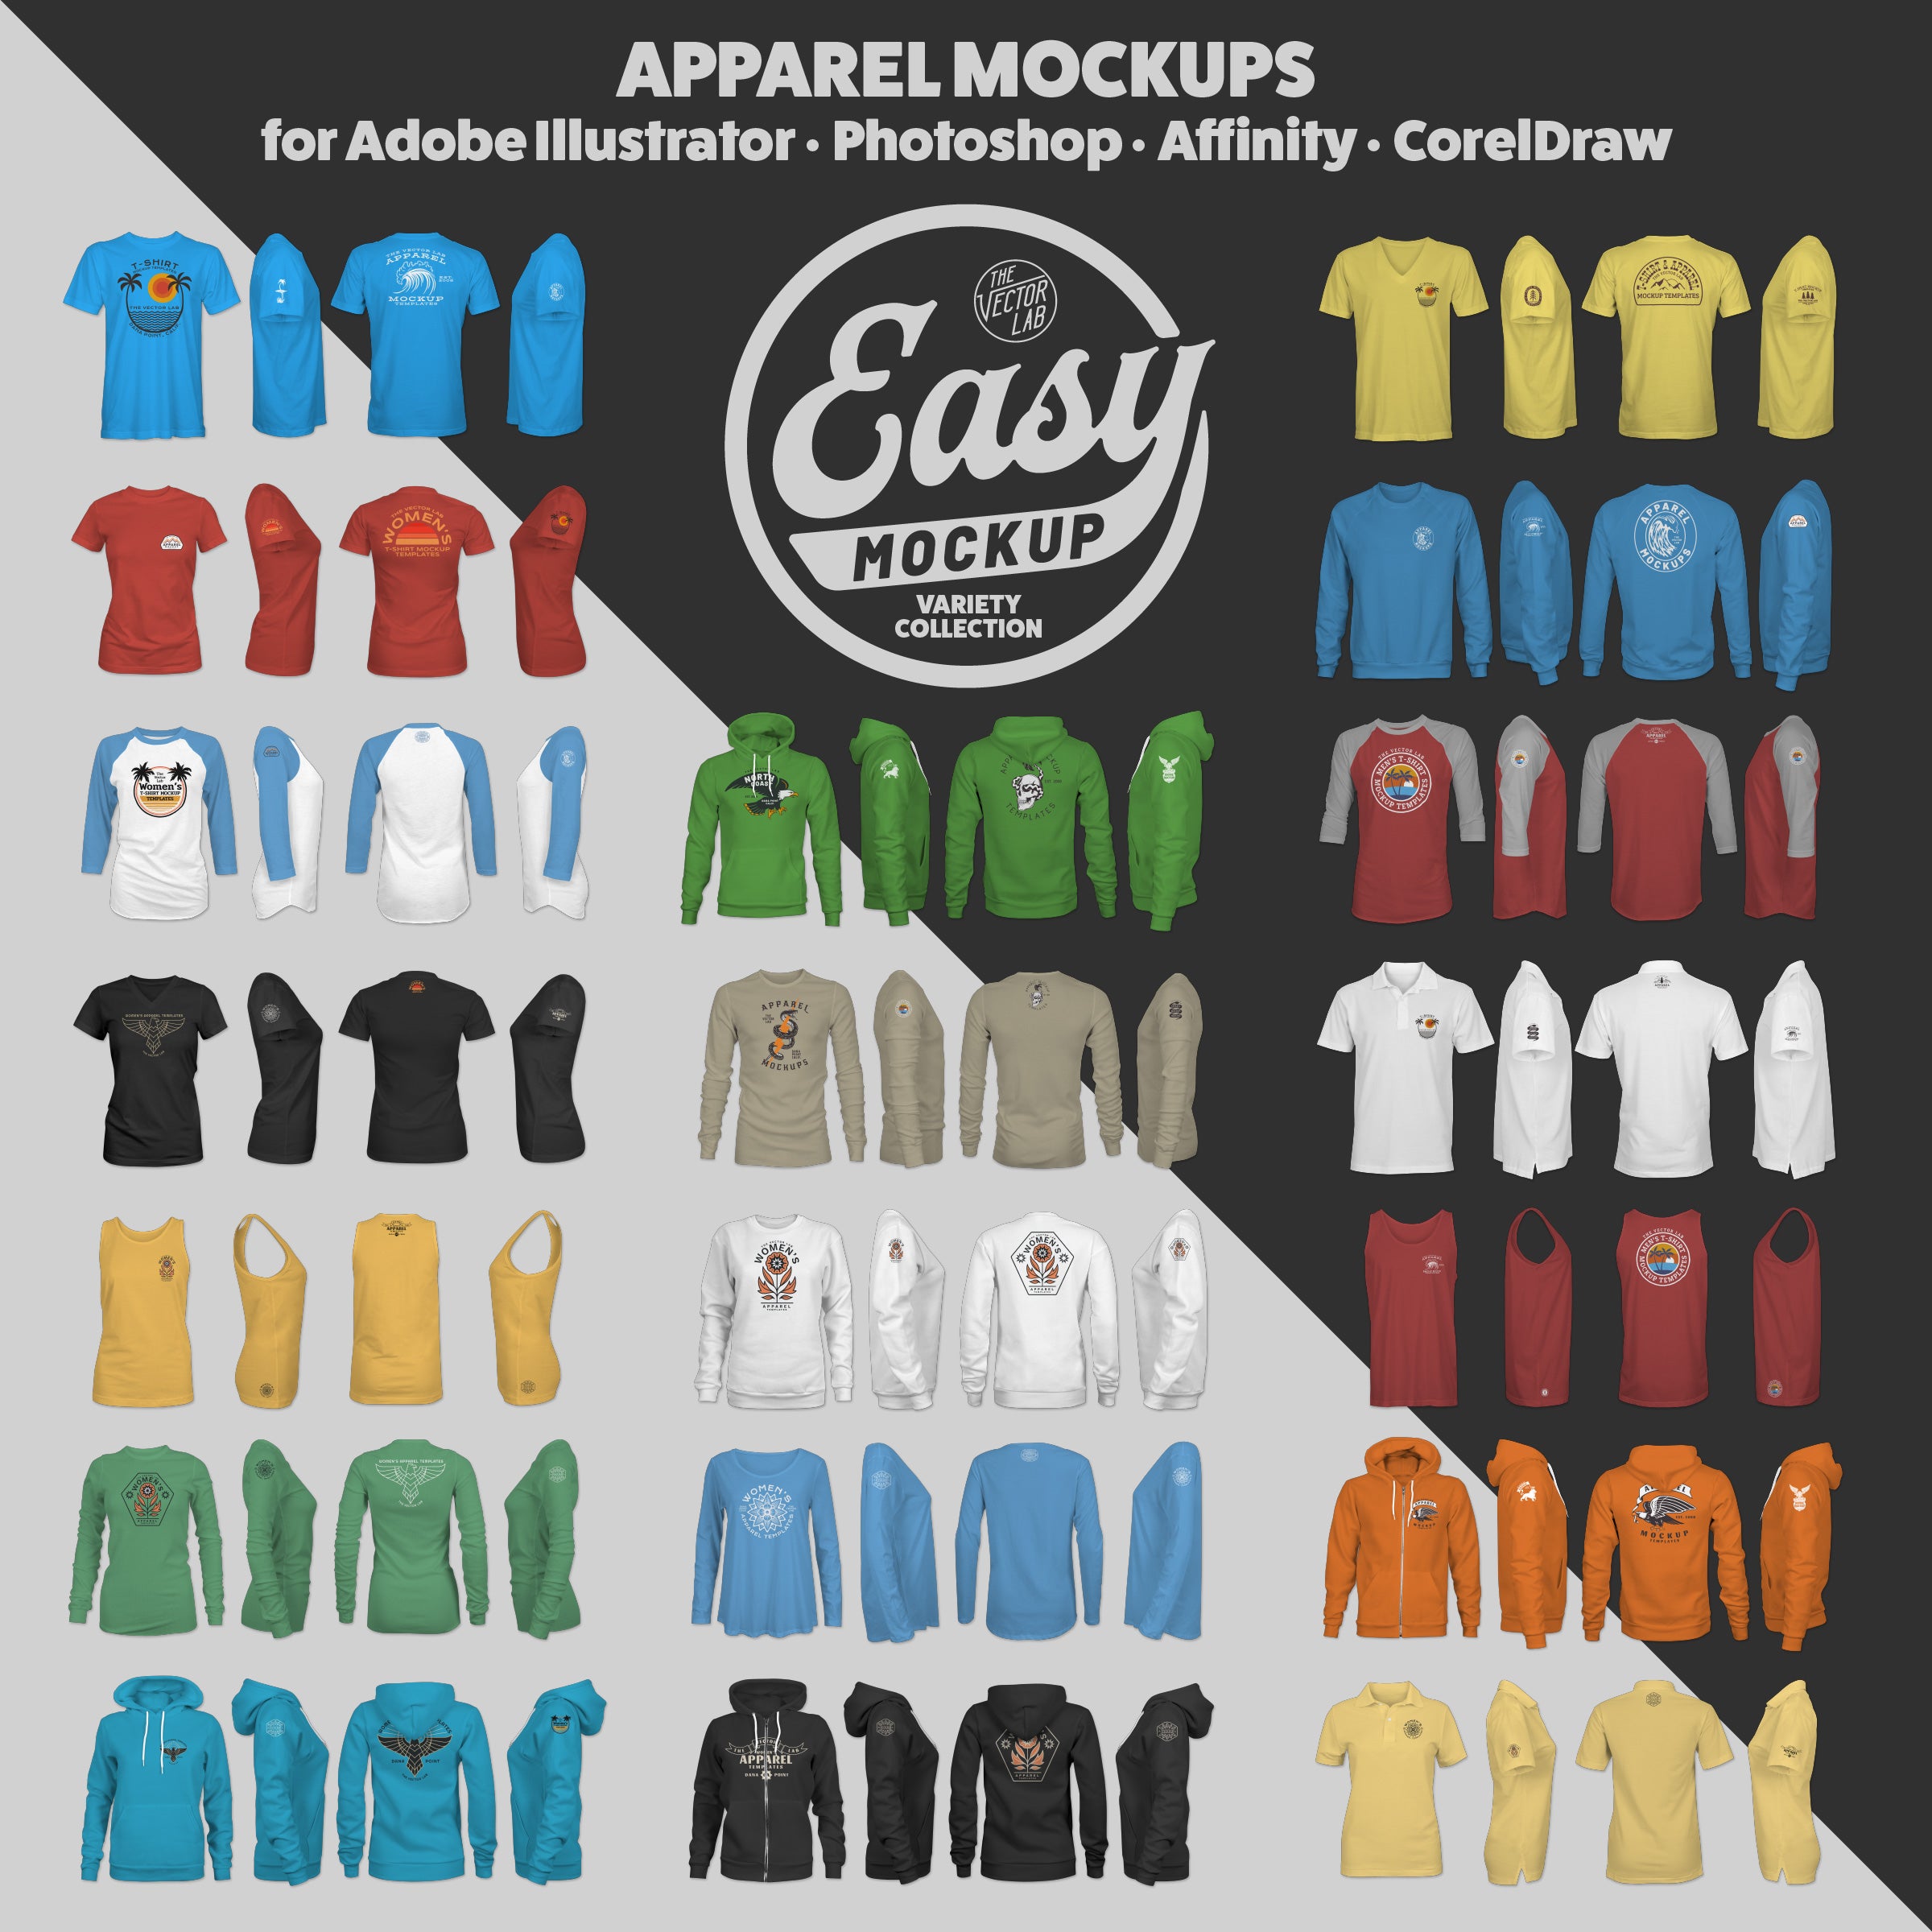 Long Sleeve Shirt Mockup - Free Vectors & PSDs to Download